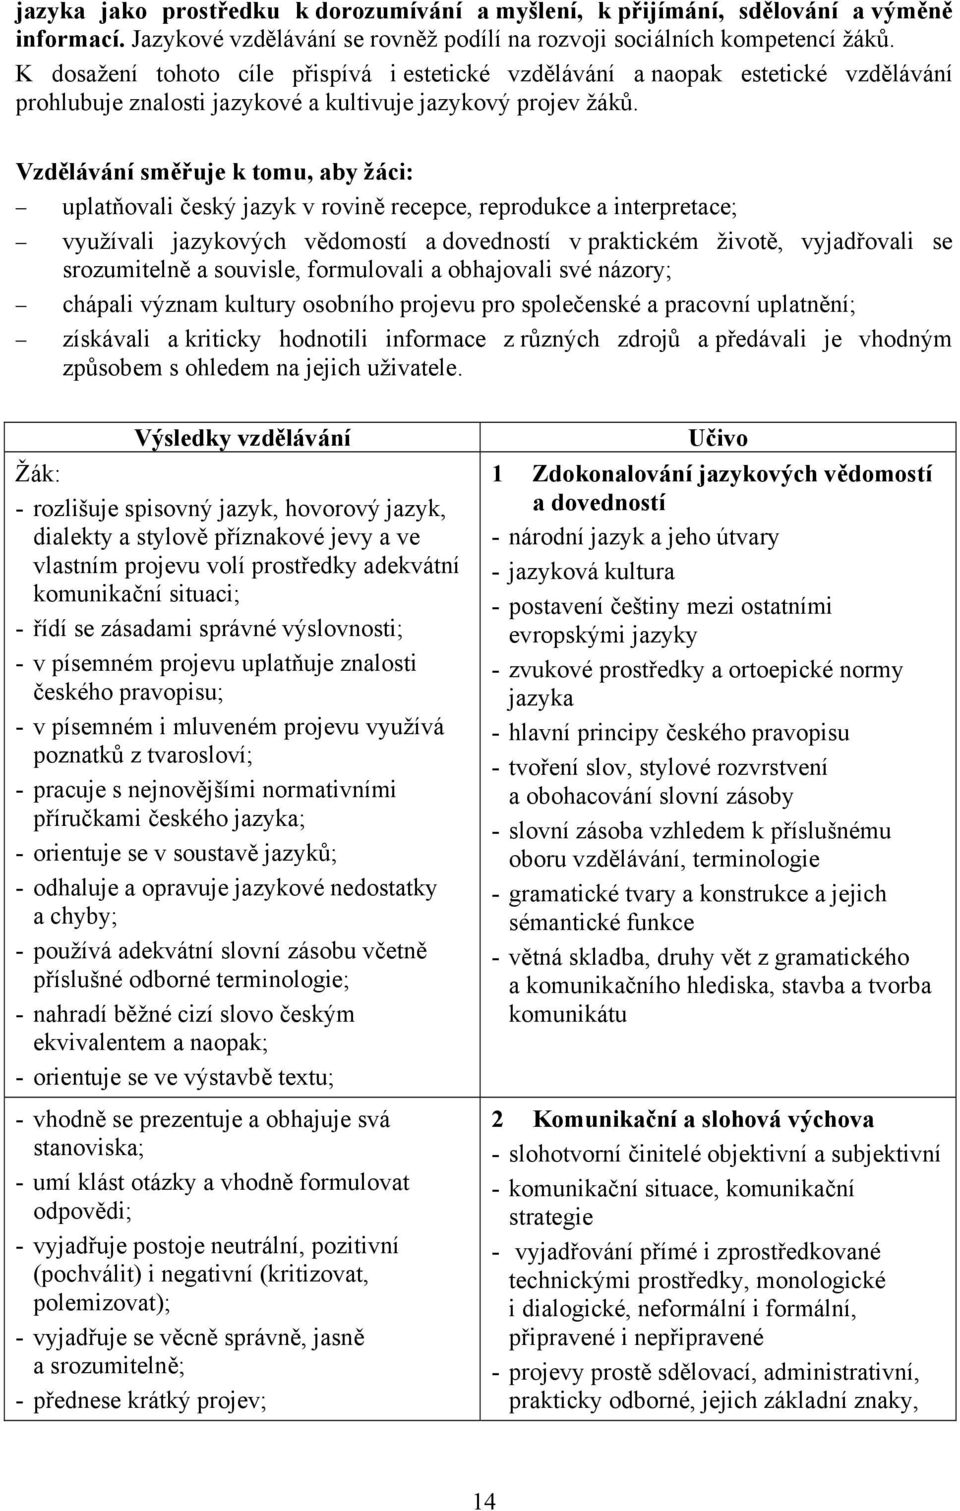 Vzdělávání směřuje k tomu, aby žáci: uplatňovali český jazyk v rovině recepce, reprodukce a interpretace; využívali jazykových vědomostí a dovedností v praktickém životě, vyjadřovali se srozumitelně